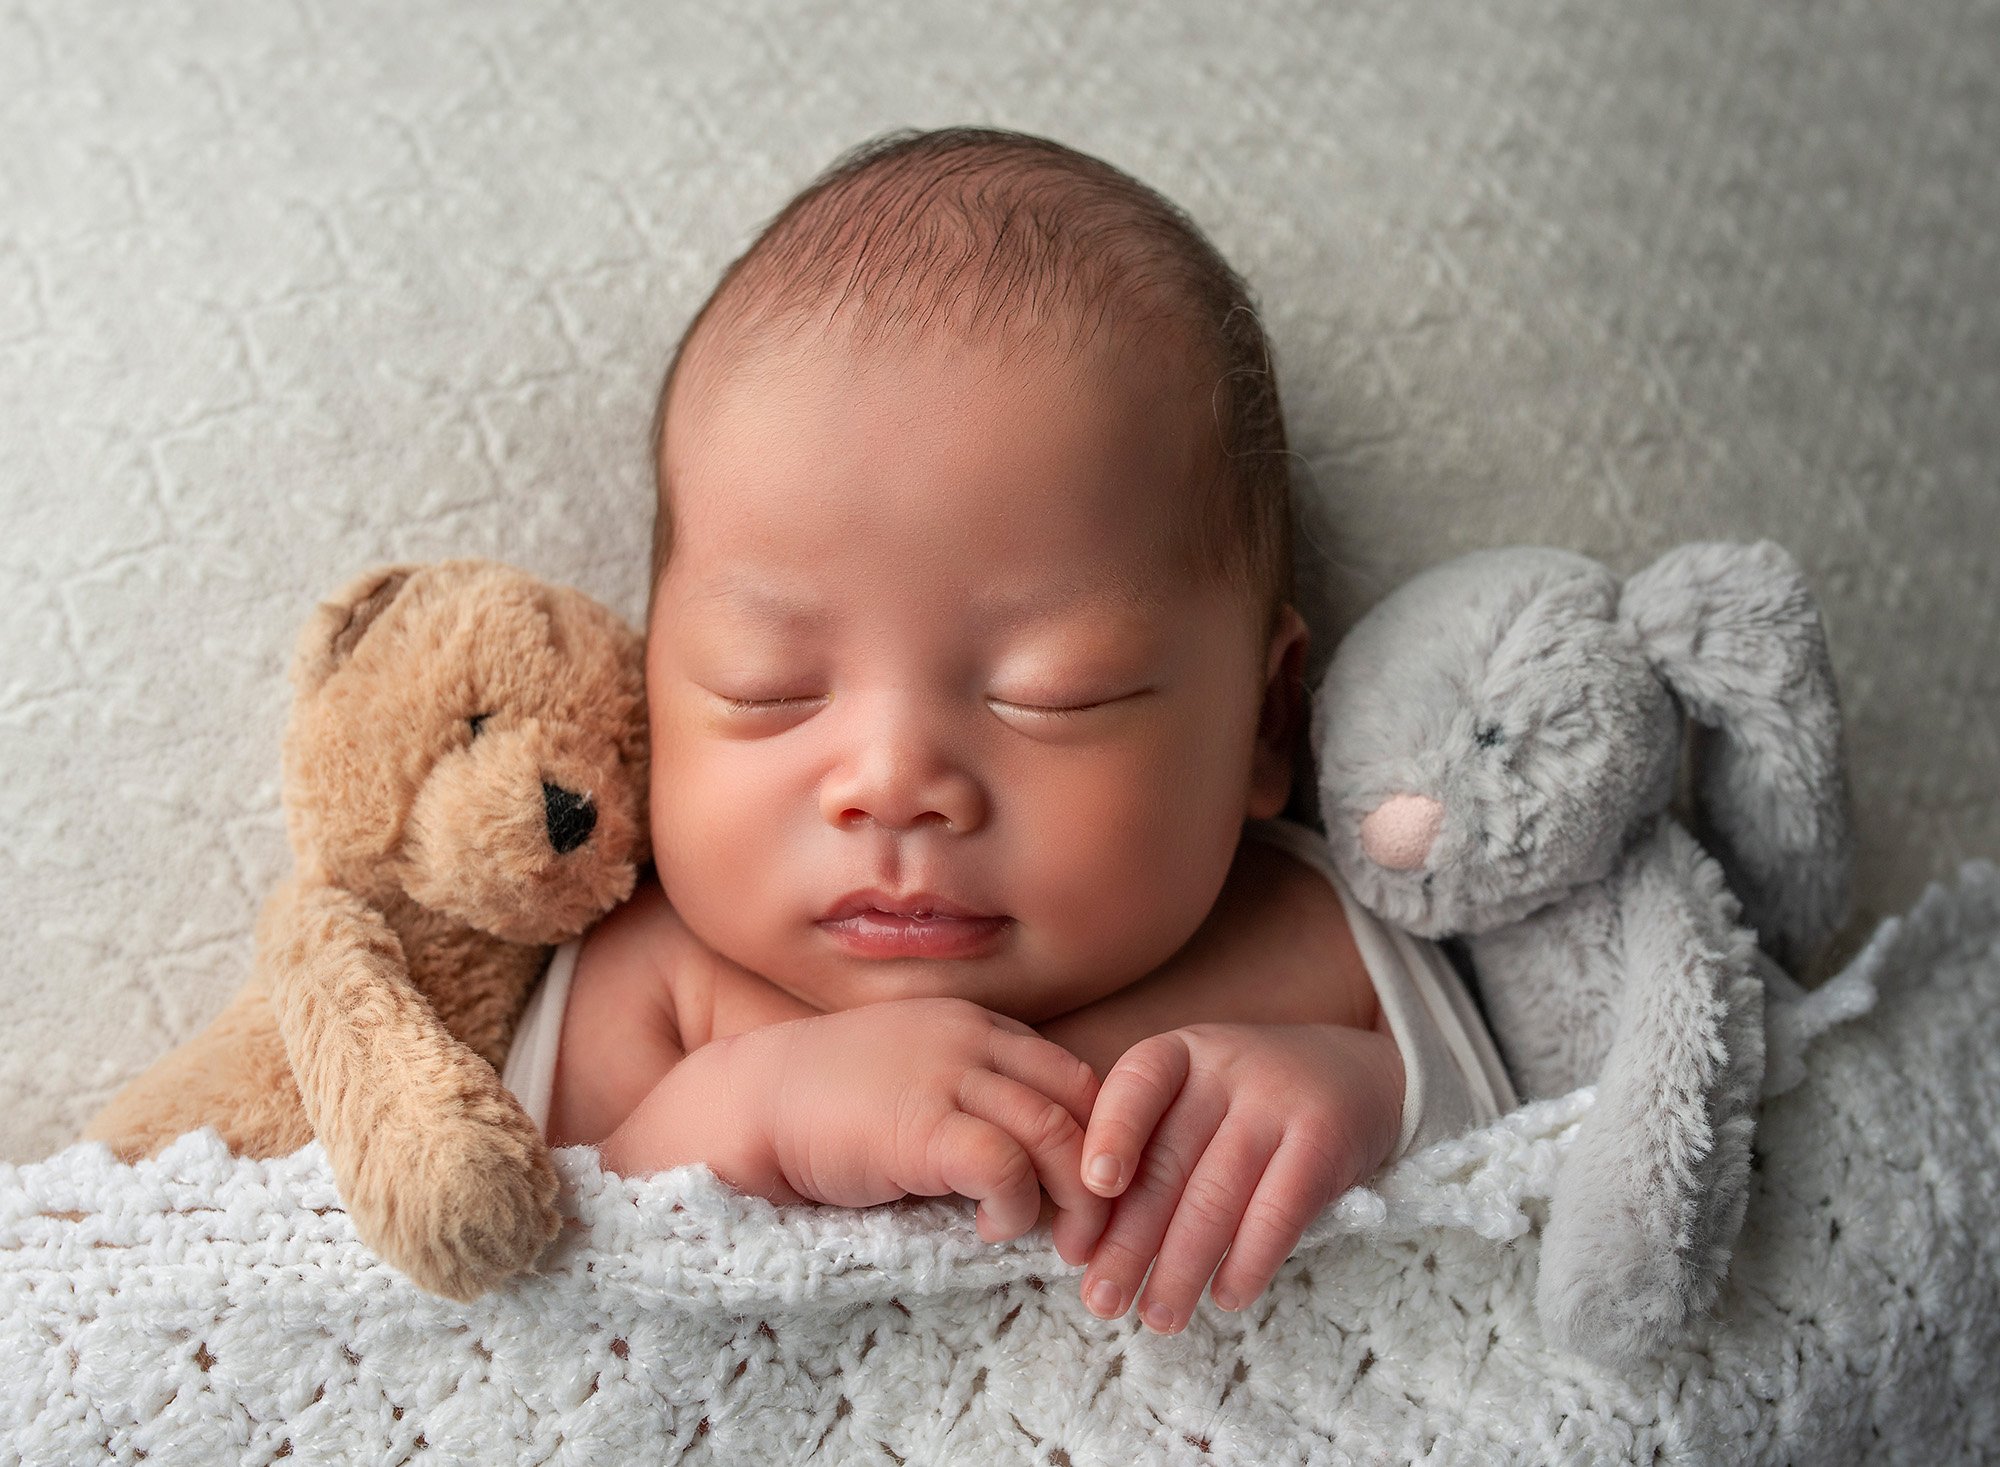 Baby Boy Newborn Photos newborn baby boy fast asleep snuggled in between a teddy bear and a bunny